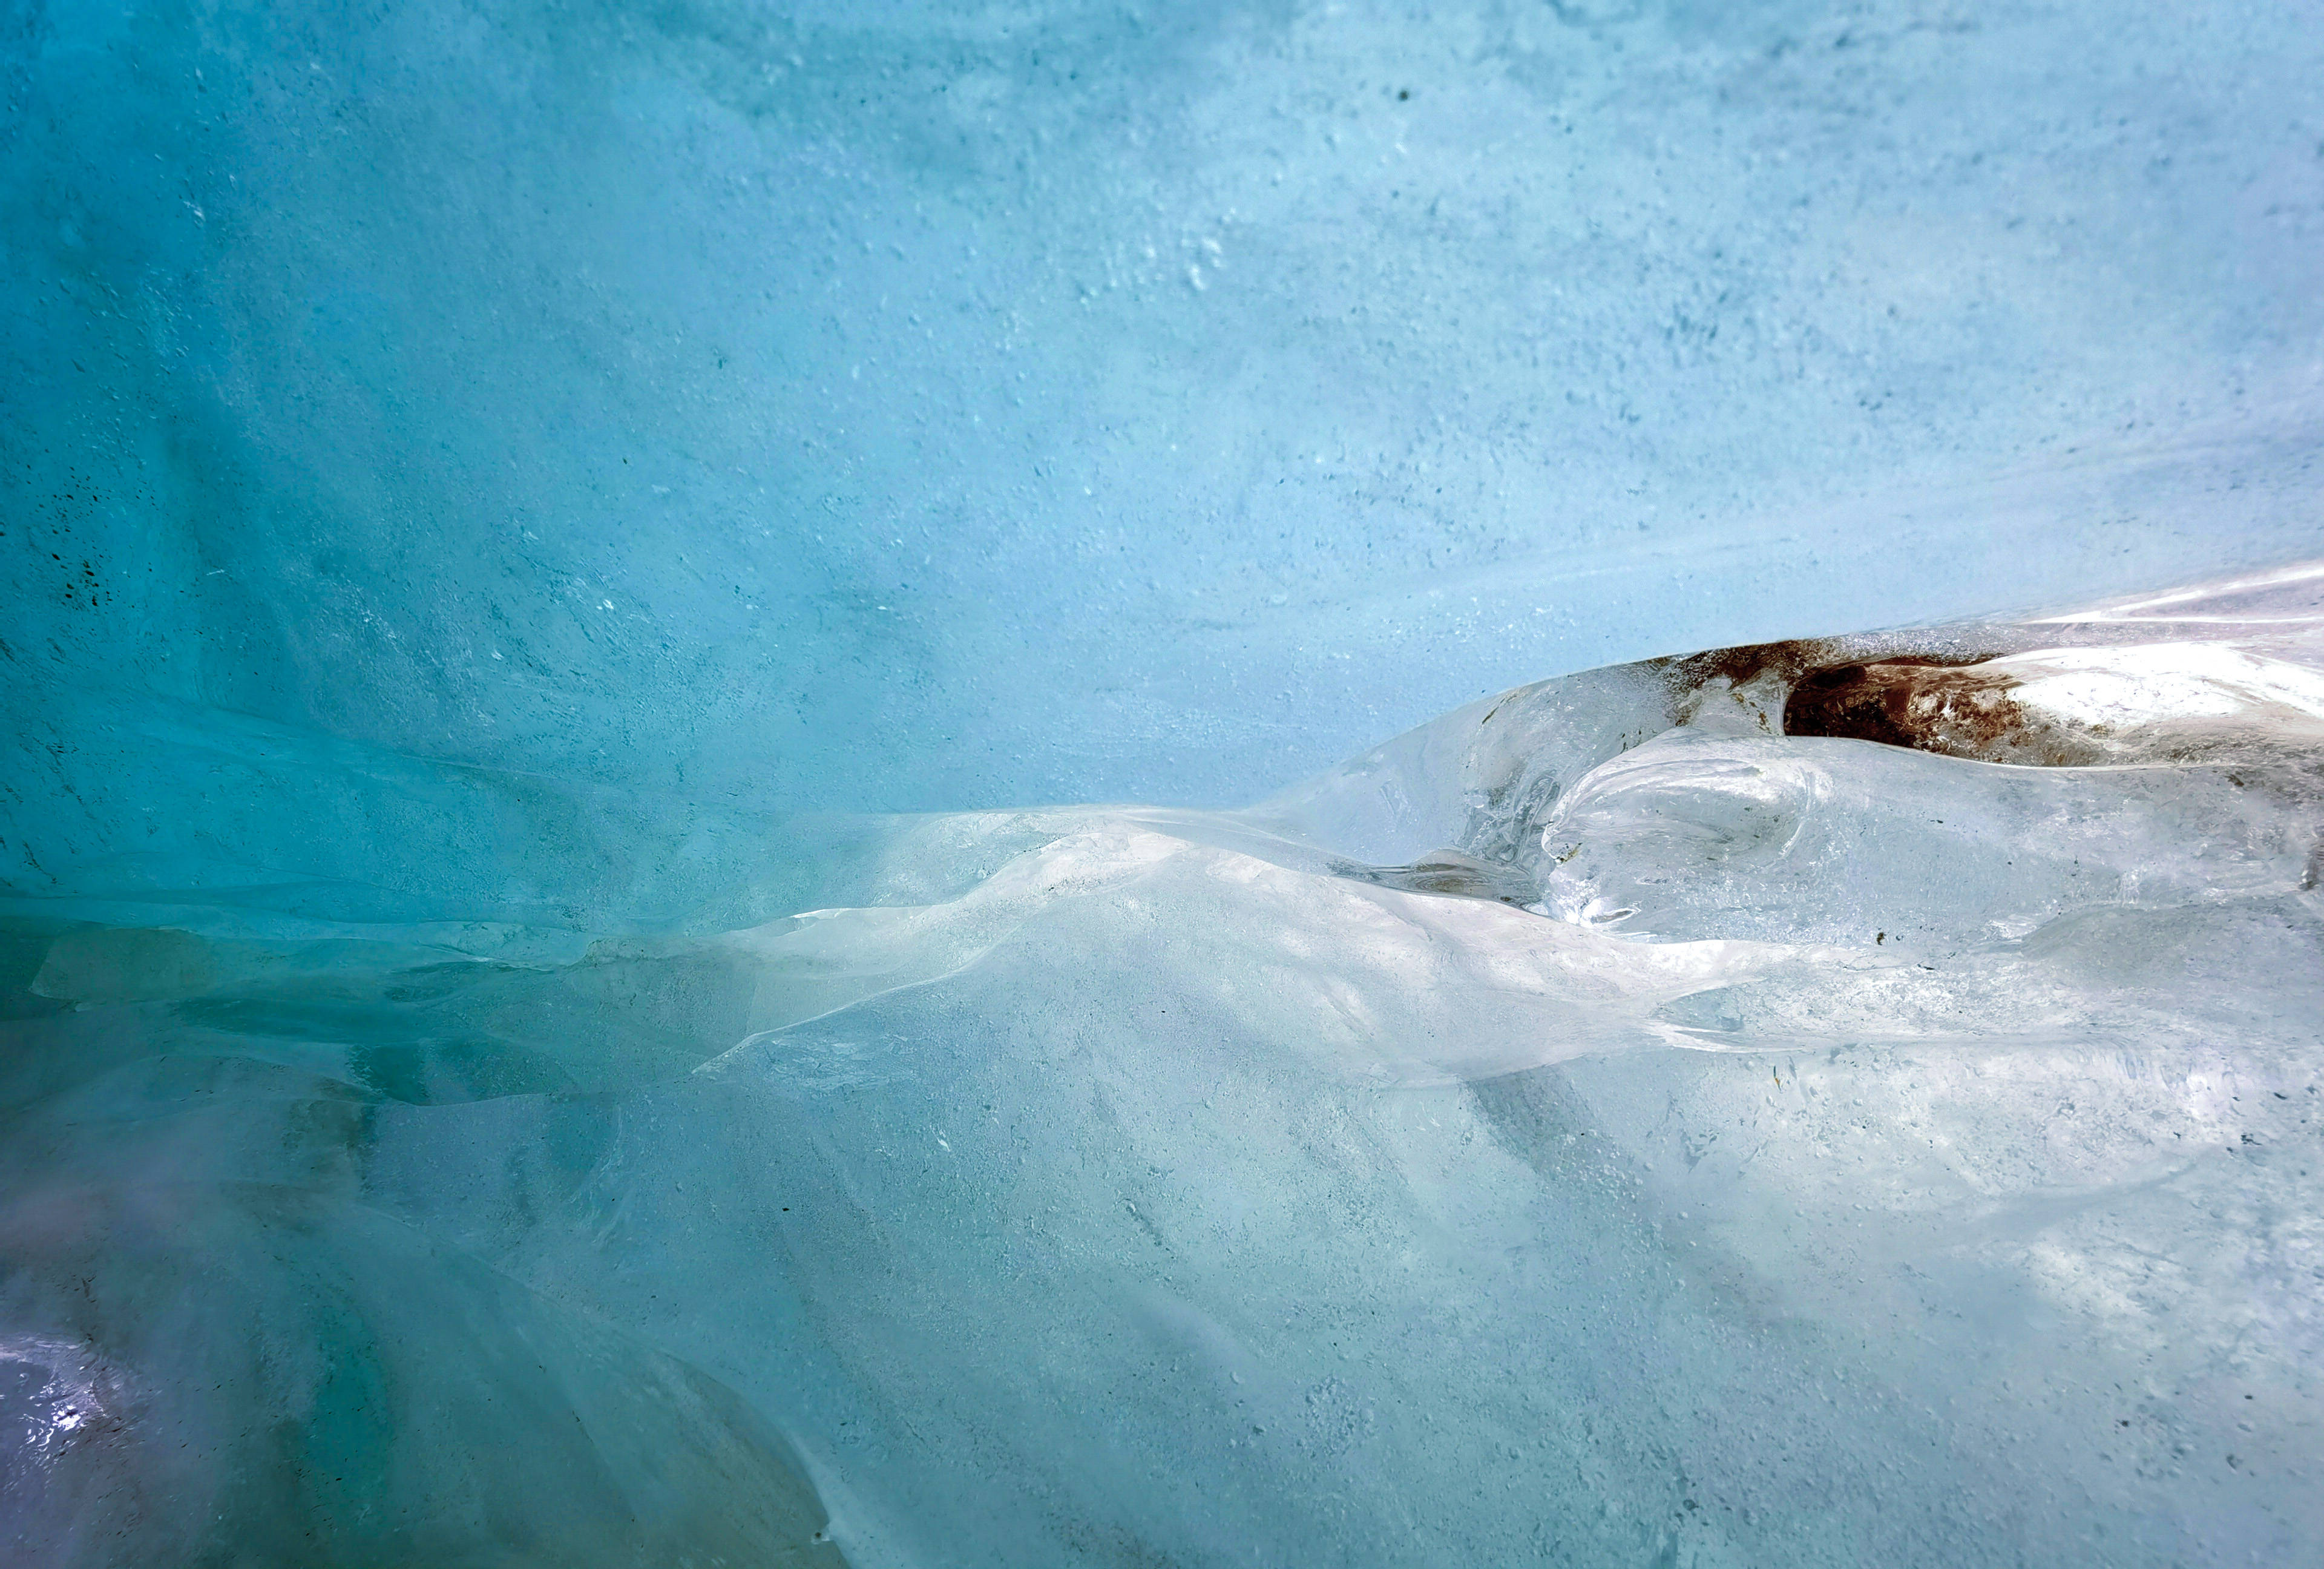 达古冰川盖被子,减缓70%左右的冰川消融!